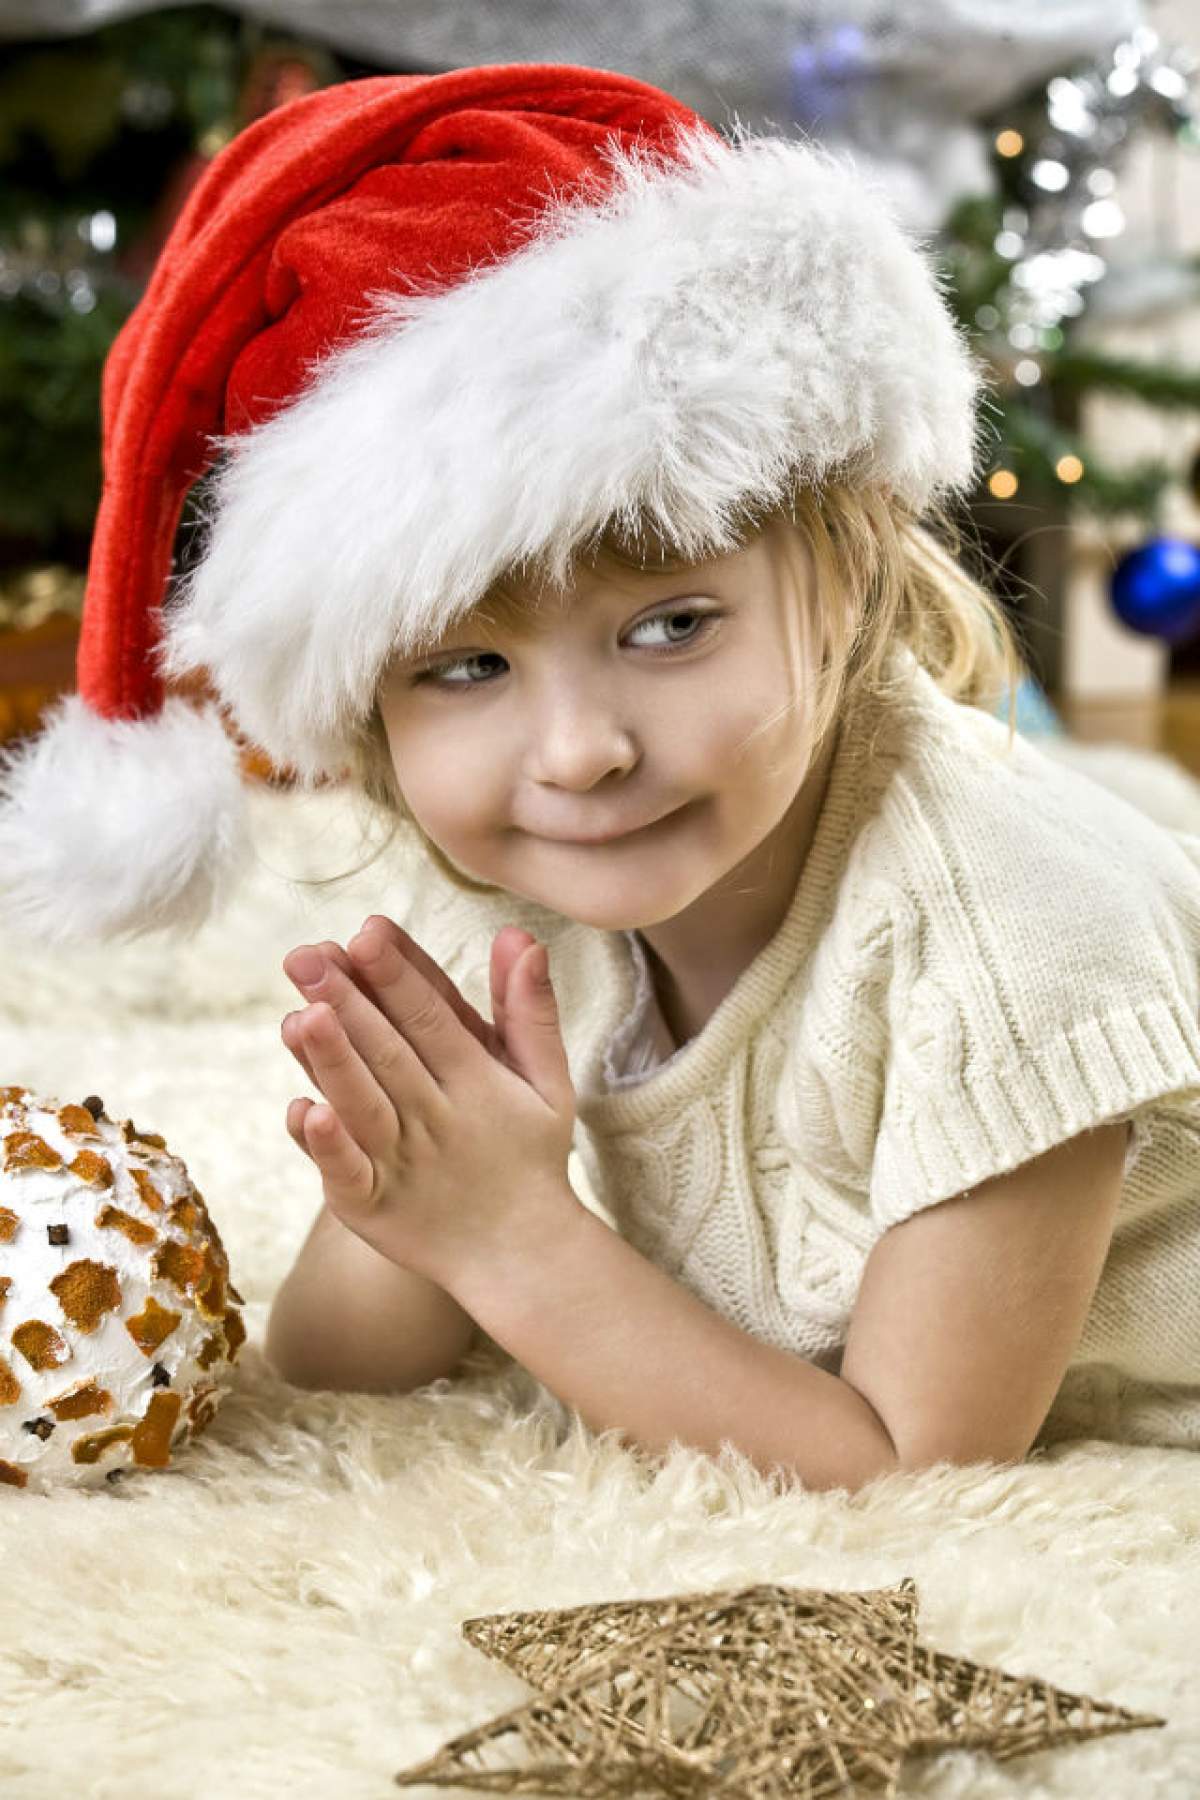 ÎNTREBAREA ZILEI - SÂMBĂTĂ: Care sunt cele mai dorite cadouri de Crăciun?